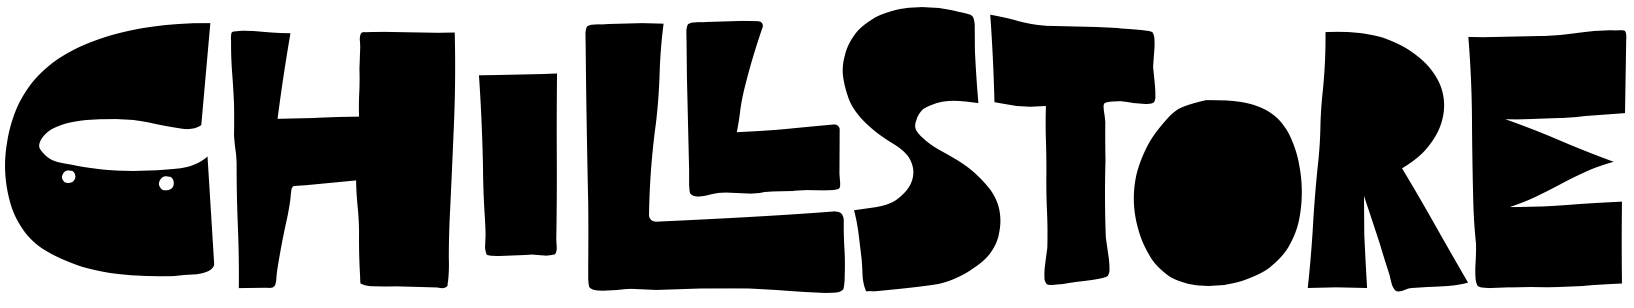 logo-text-orez